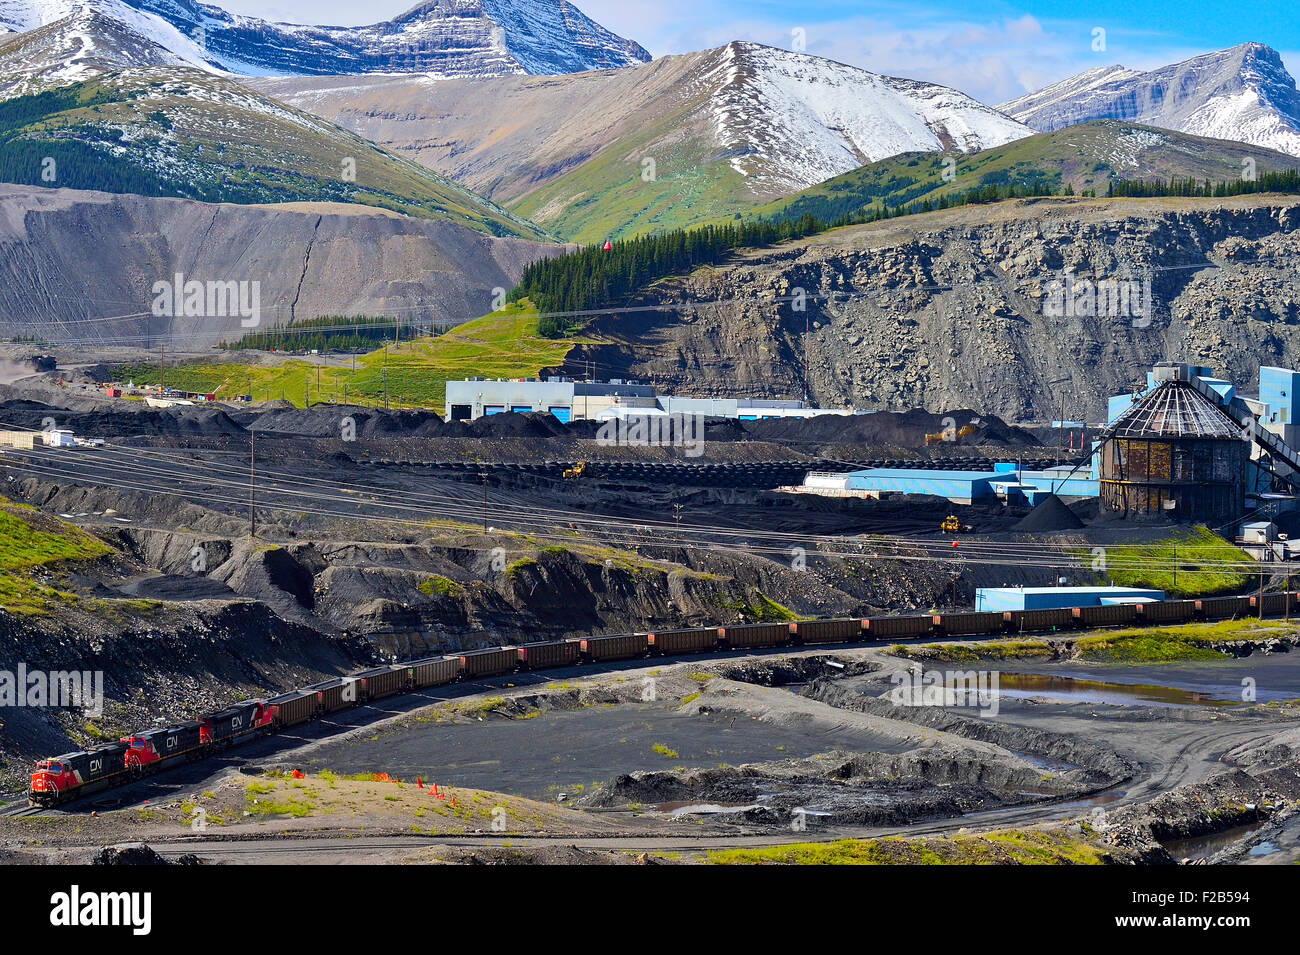 Un paysage horizontal image de l'usine de transformation du charbon de teck dans les contreforts des montagnes Rocheuses, près de l'Alberta de Cadomin Banque D'Images